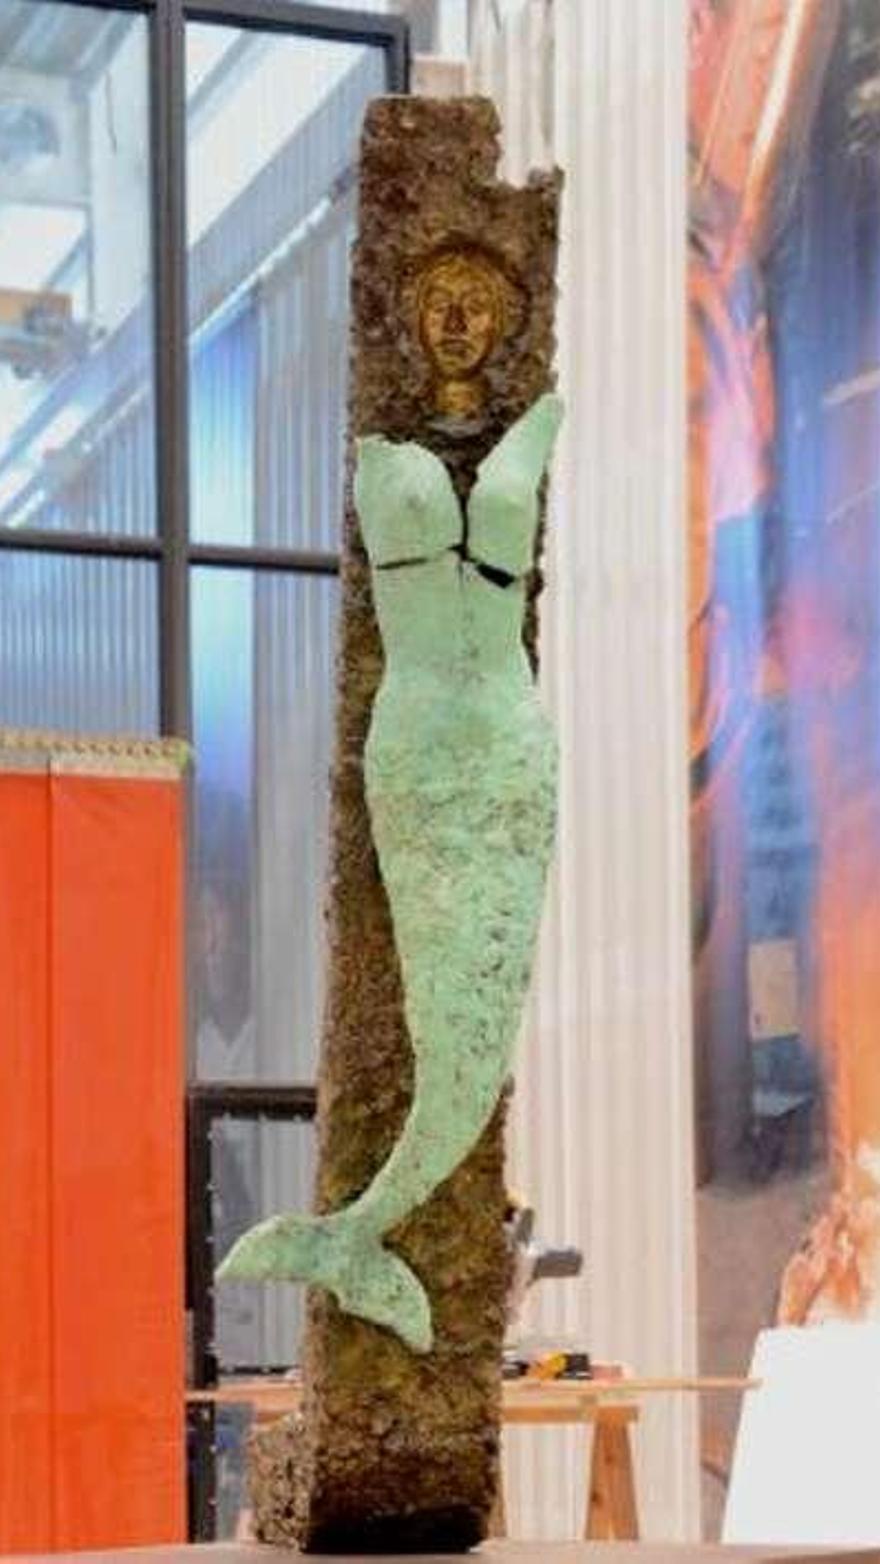 Escultura realizada por Cándido Pazos en homenaje a Pablo Neruda sobre una sirena.